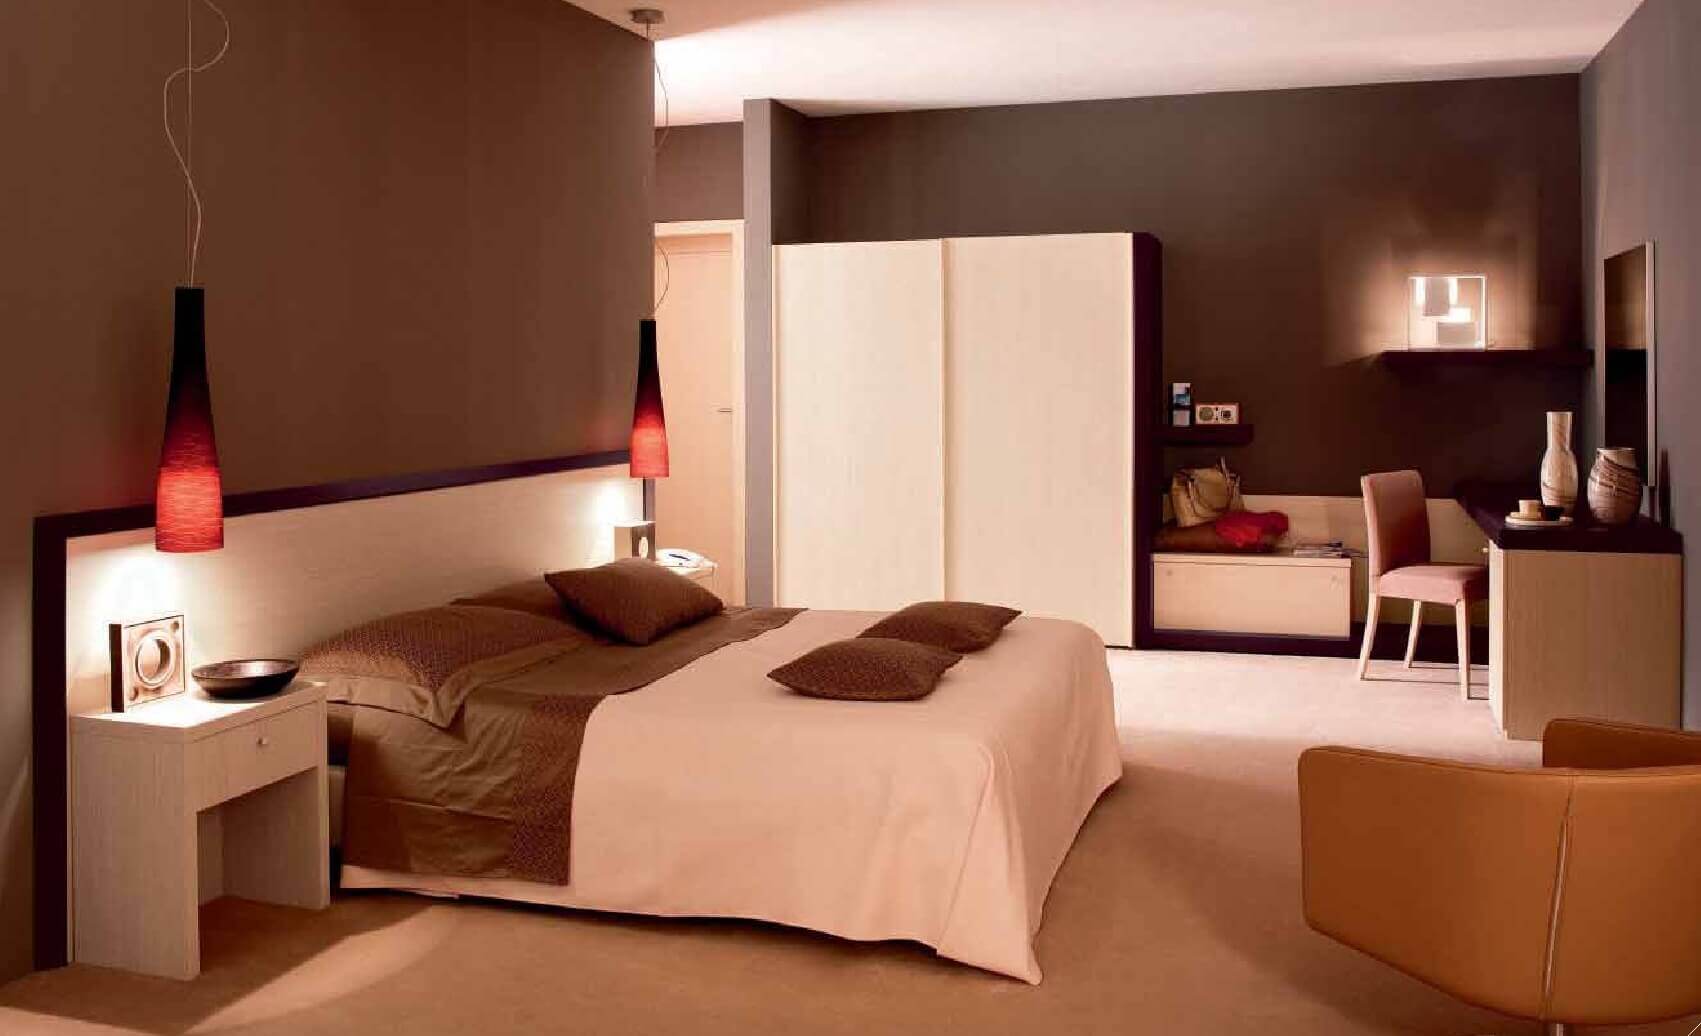 ديكورات غرف النوم: كيفية جعل غرفة النوم مميزة للغاية وعصري